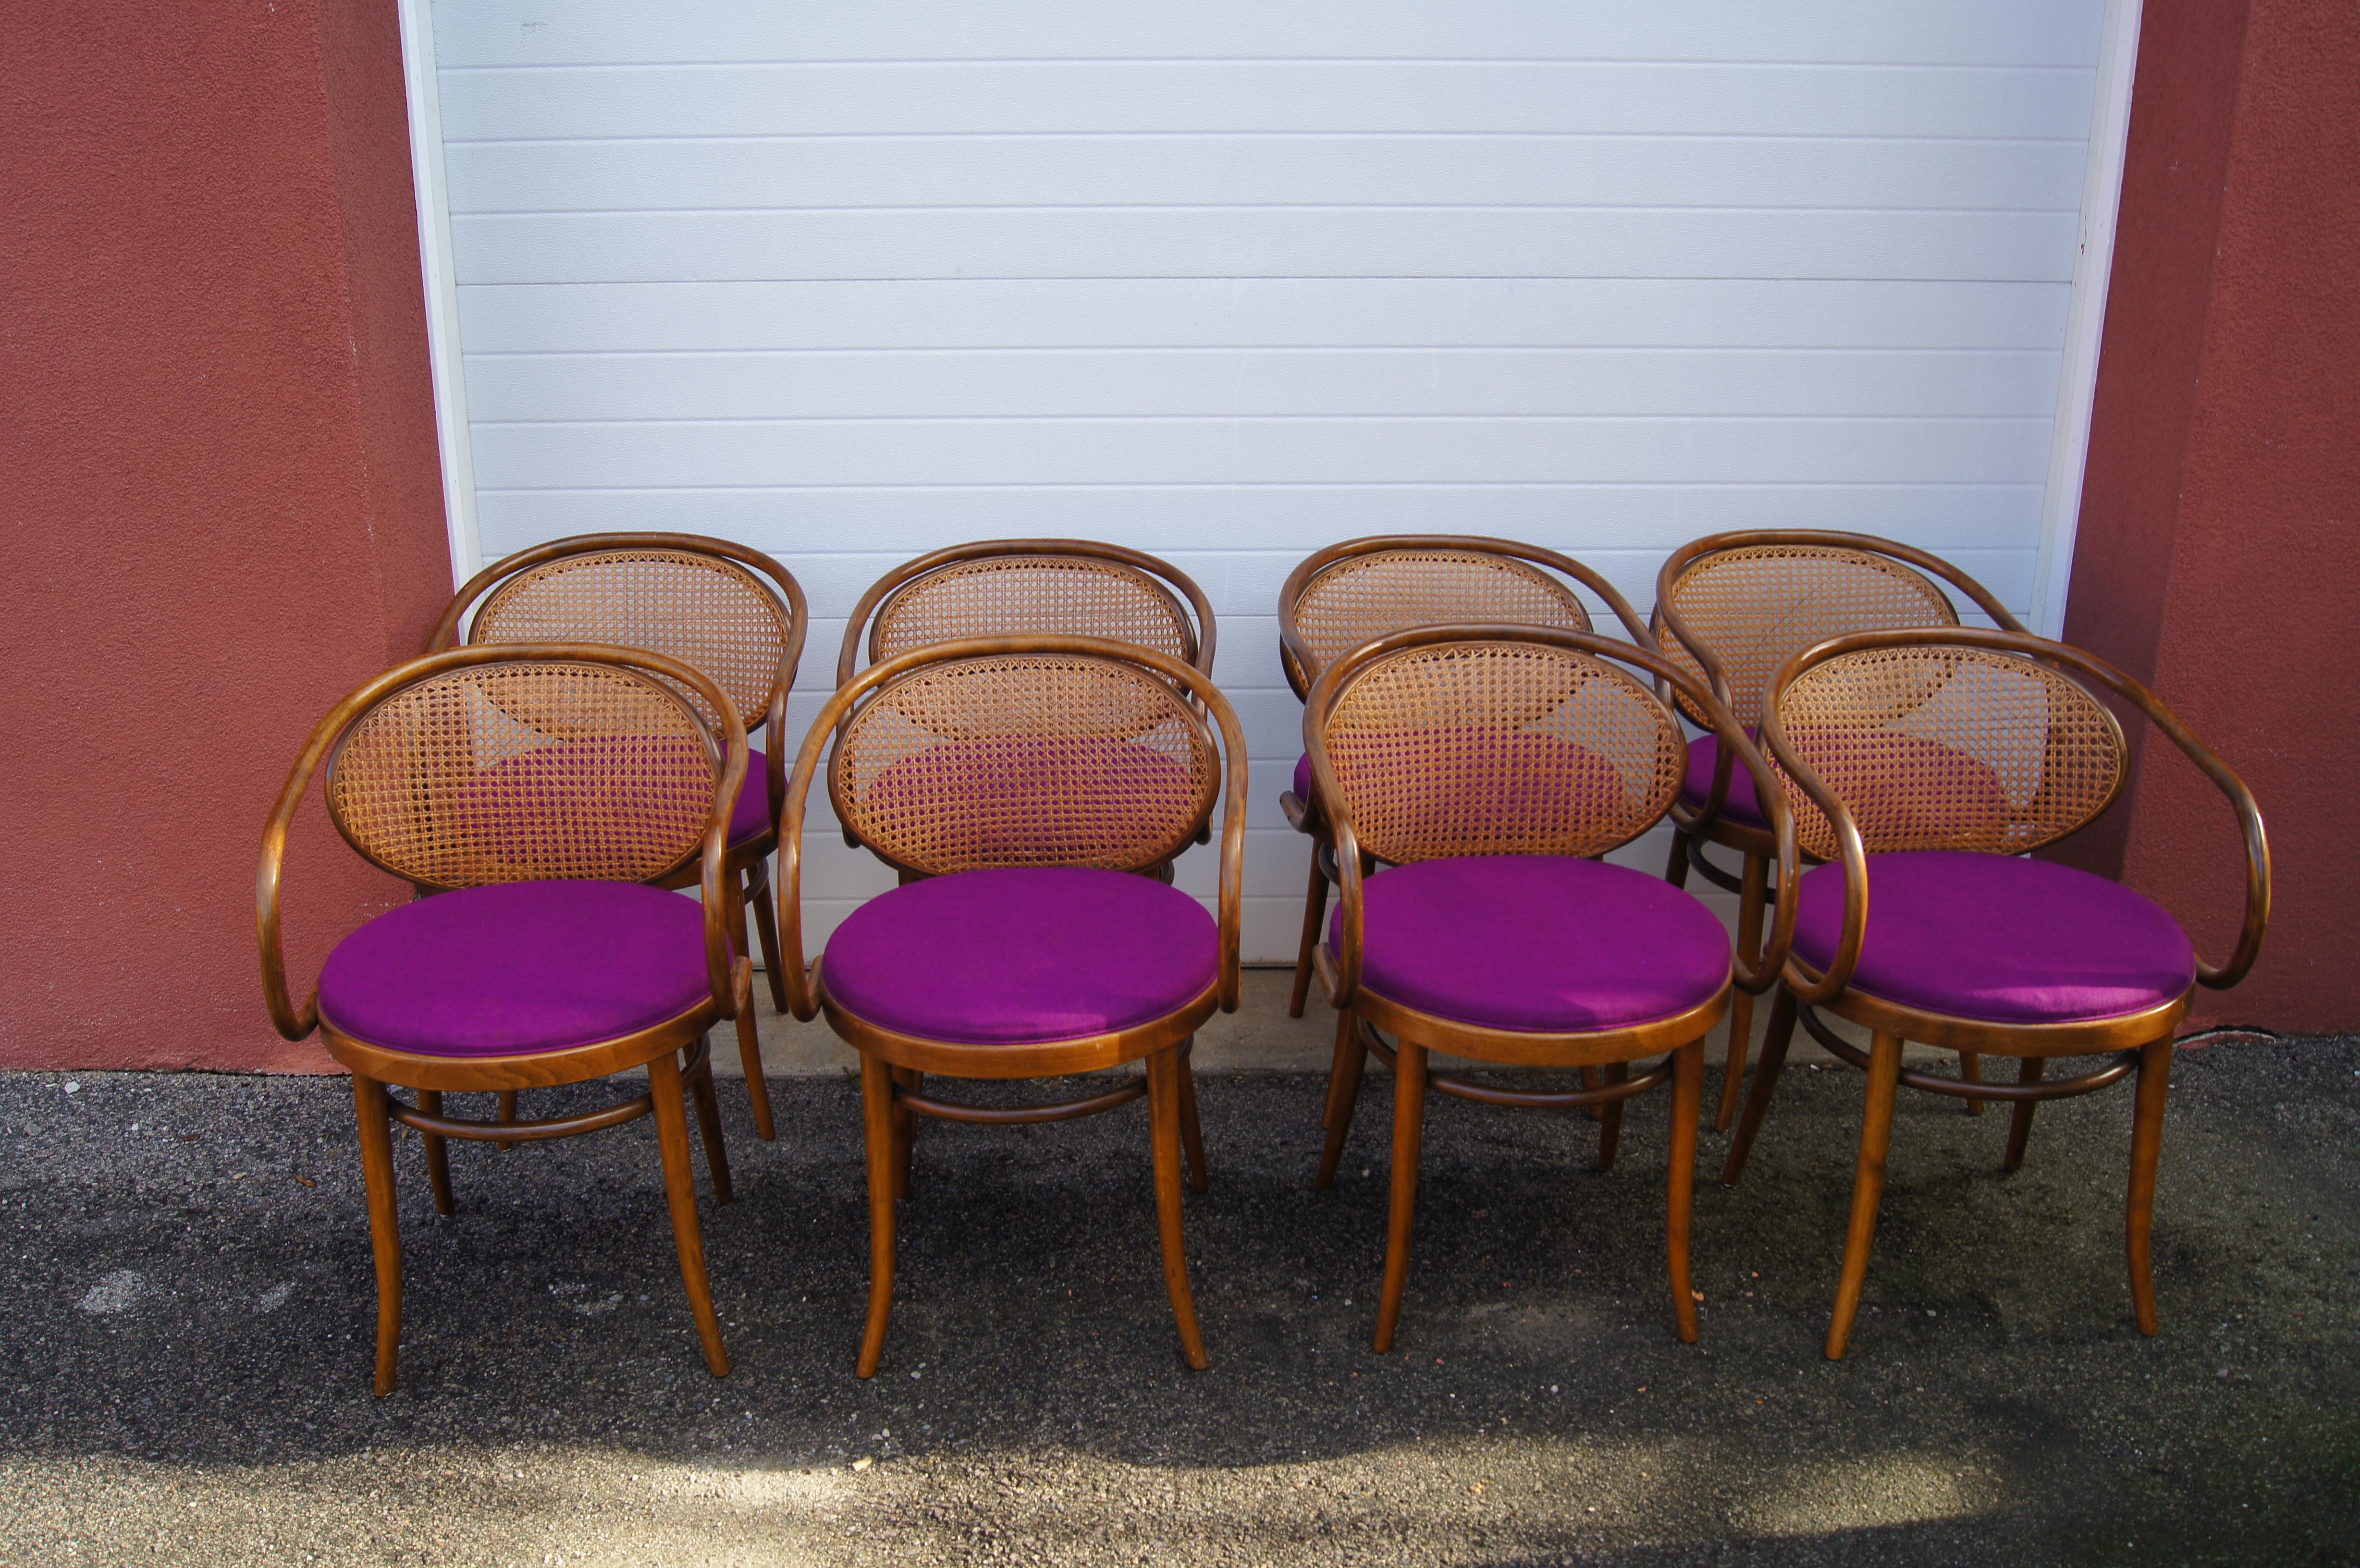 Fabriqué en Tchécoslovaquie, cet ensemble de huit fauteuils 210 par Stendig présente des cadres en bois courbé avec une belle patine et des dossiers et sièges en canne tissée à la main.

Un propriétaire précédent a ajouté un textile violet vibrant